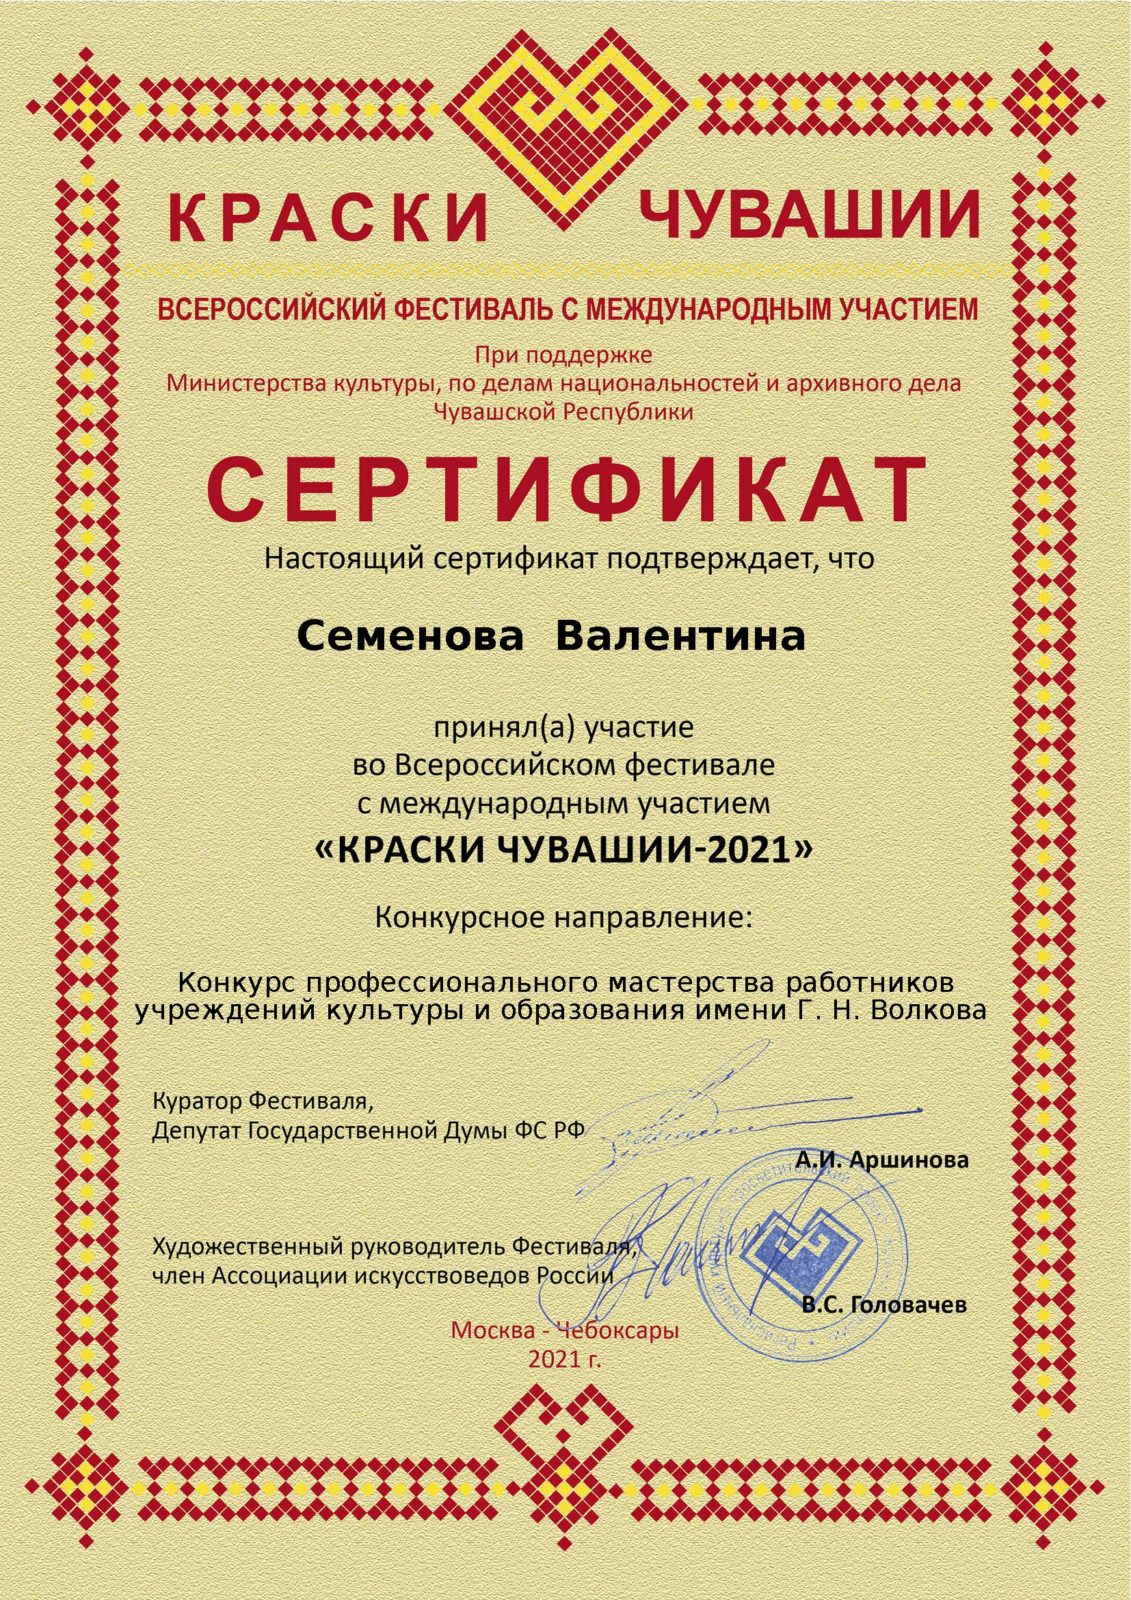 Всероссийский фестиваль «Краски Чувашии-2021»